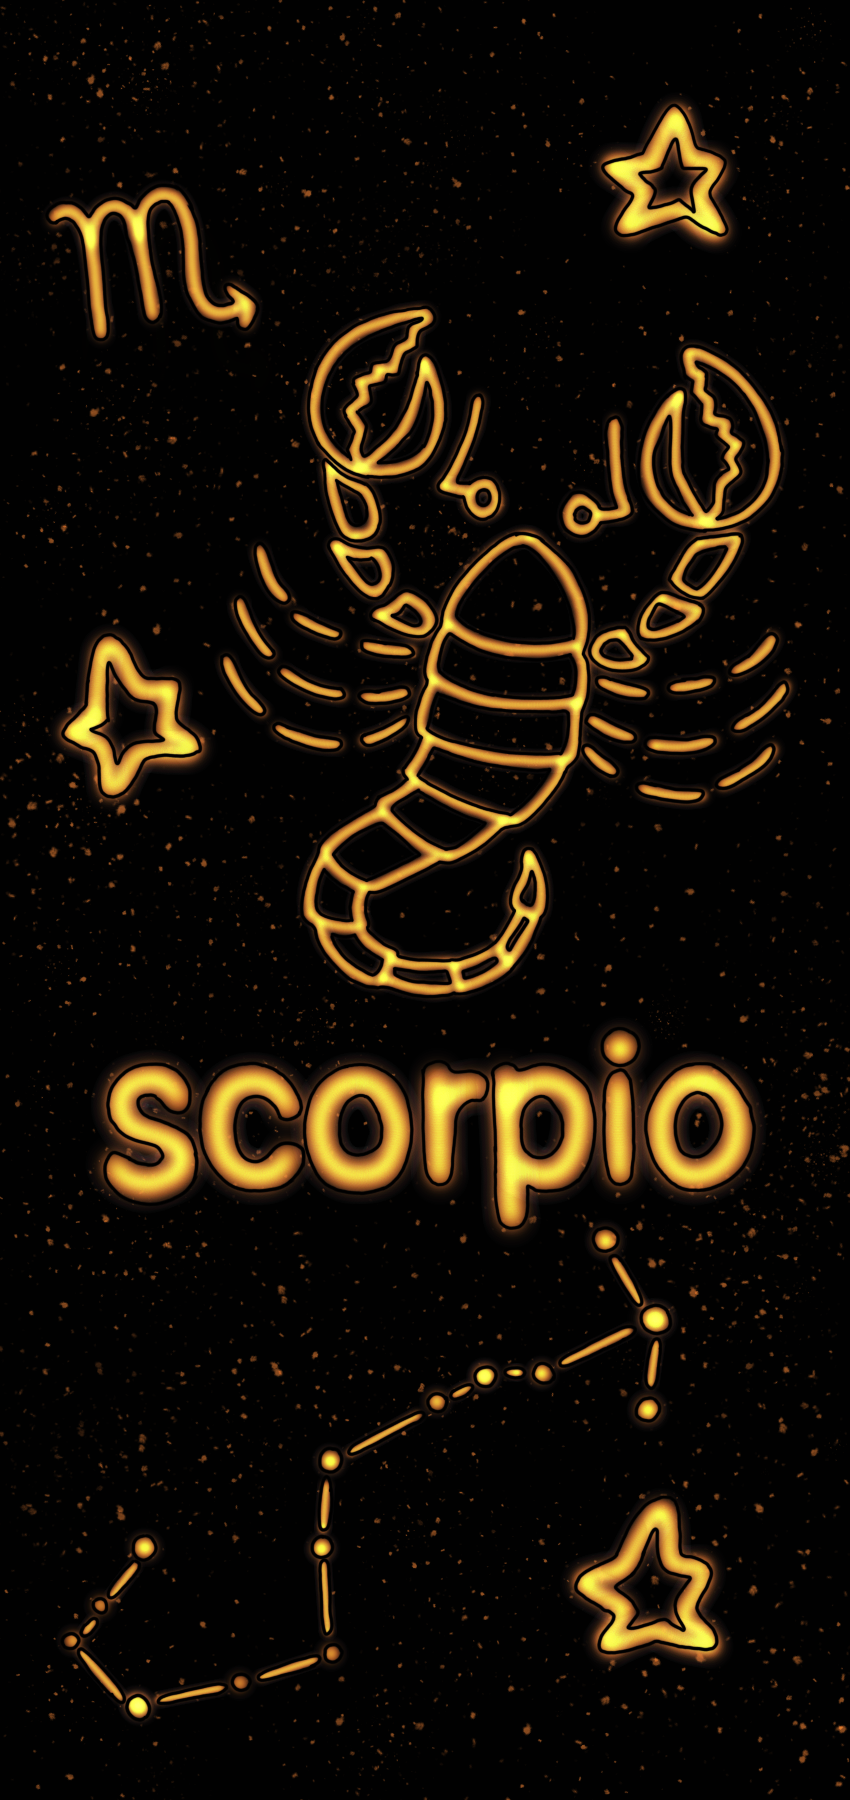 Scorpio Zodiac Wallpaper iPhone. Zodiac scorpio art, Scorpio sign, Scorpio